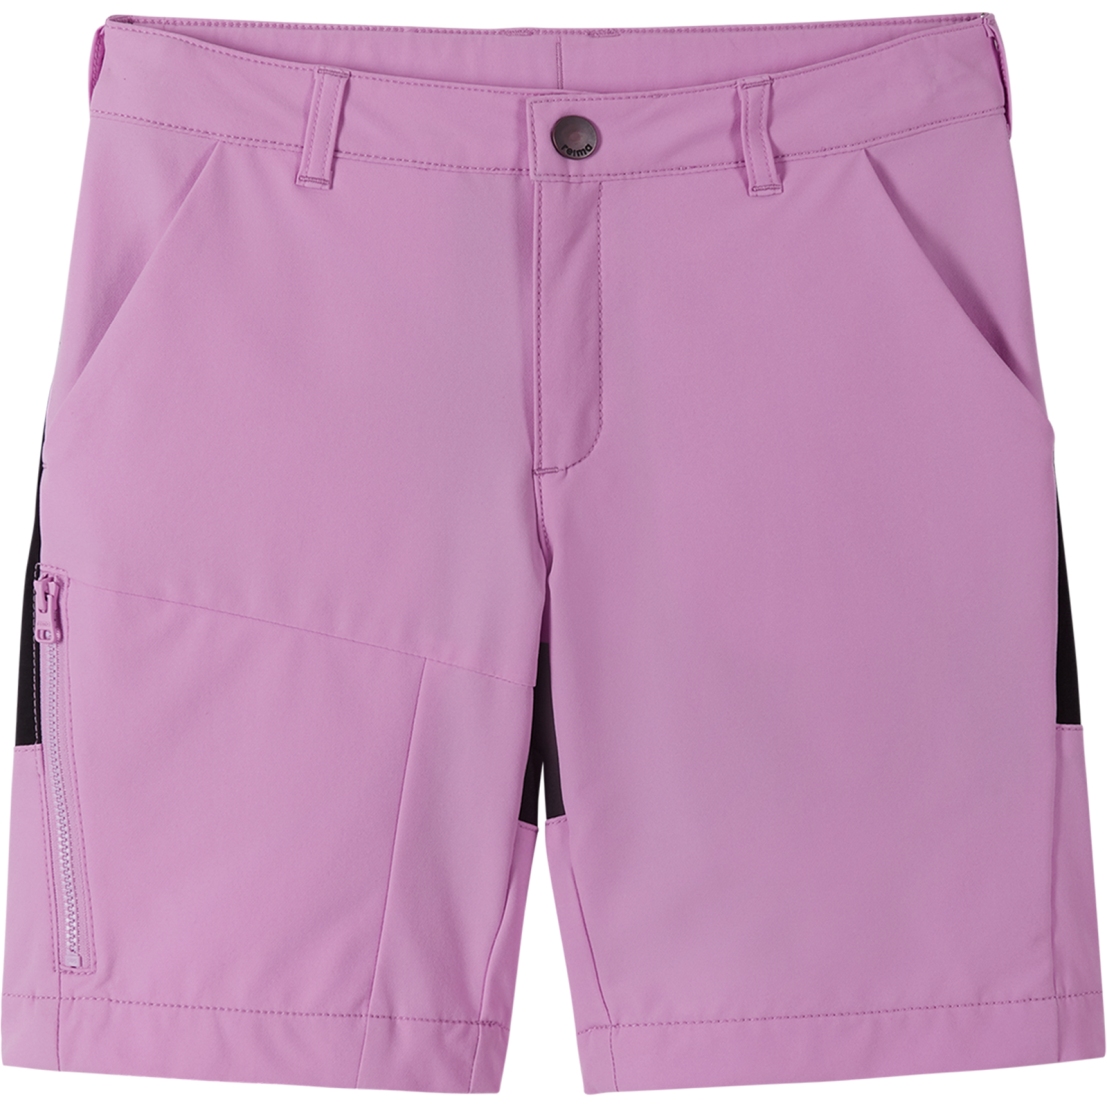 Produktbild von Reima Vaelsi Shorts Kinder - lilac pink 4200